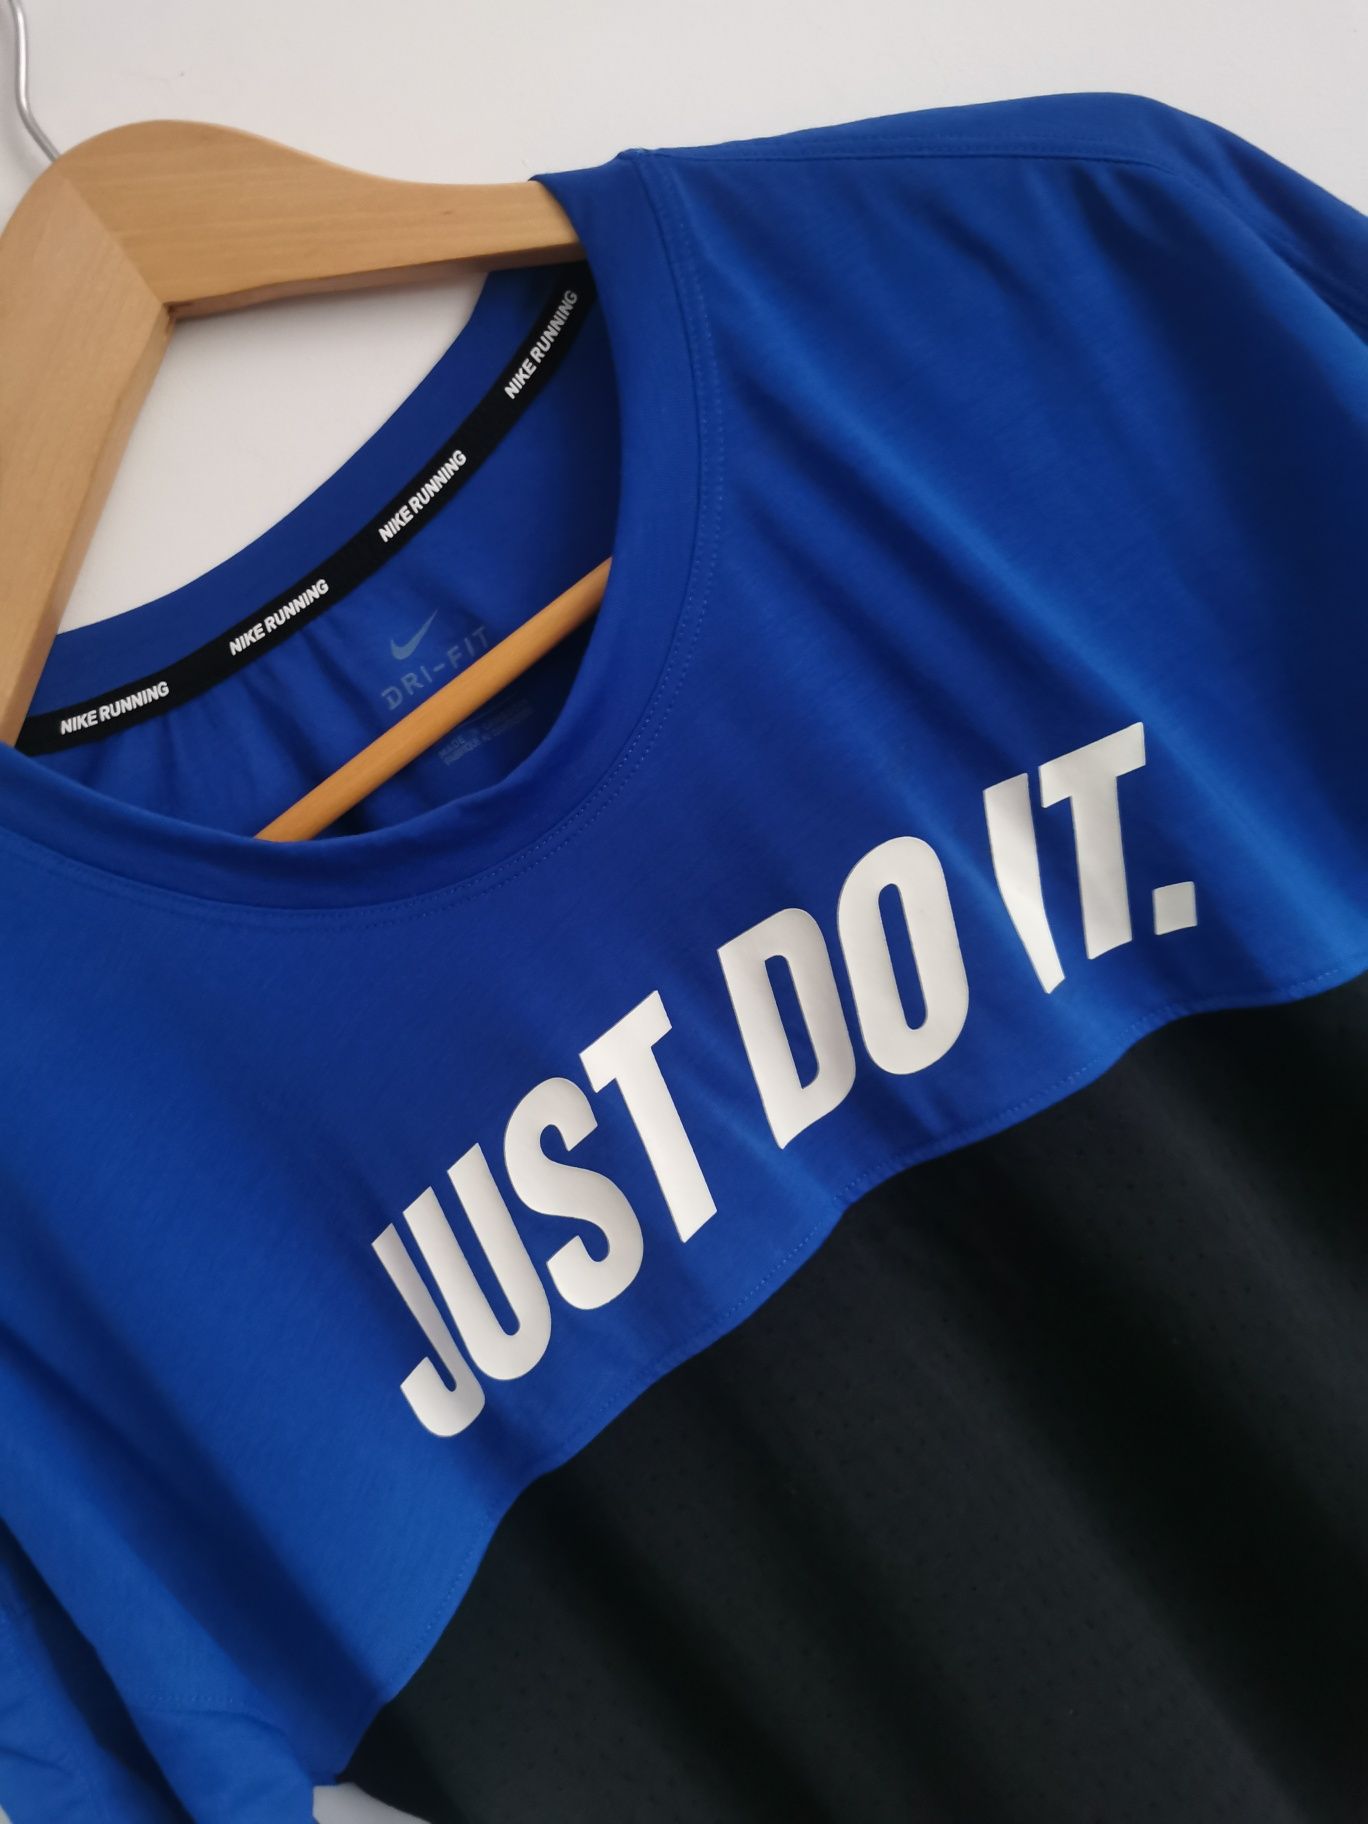 Nike Just do it t-shirt koszulka krótki rękaw sportowa logowana S/M